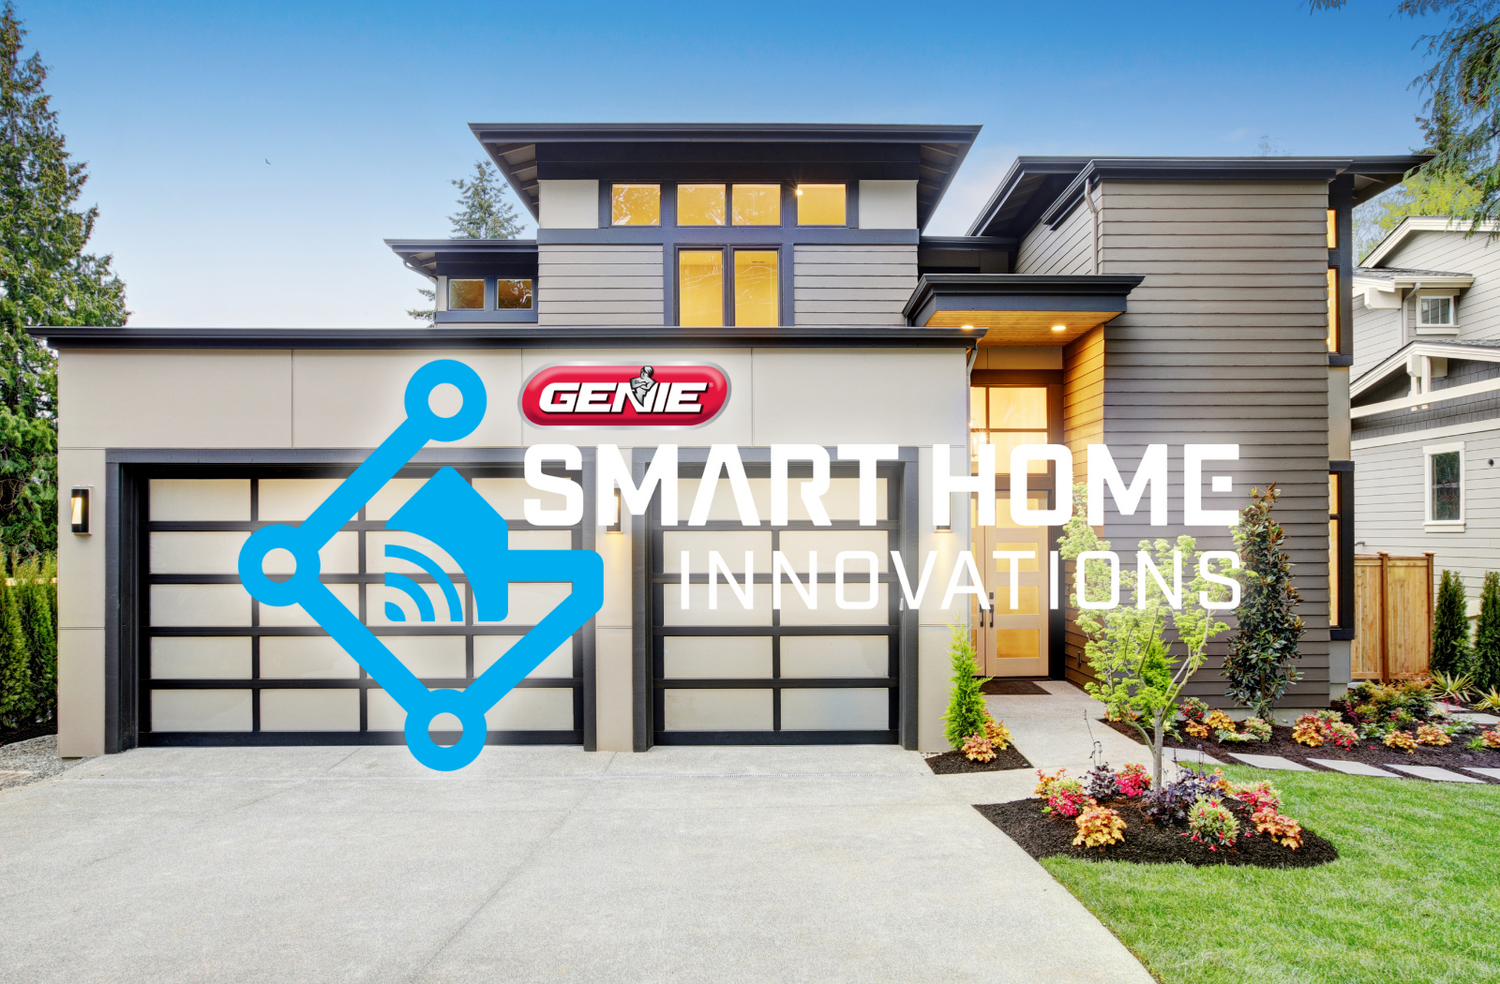 Genie Smart Home Innovations